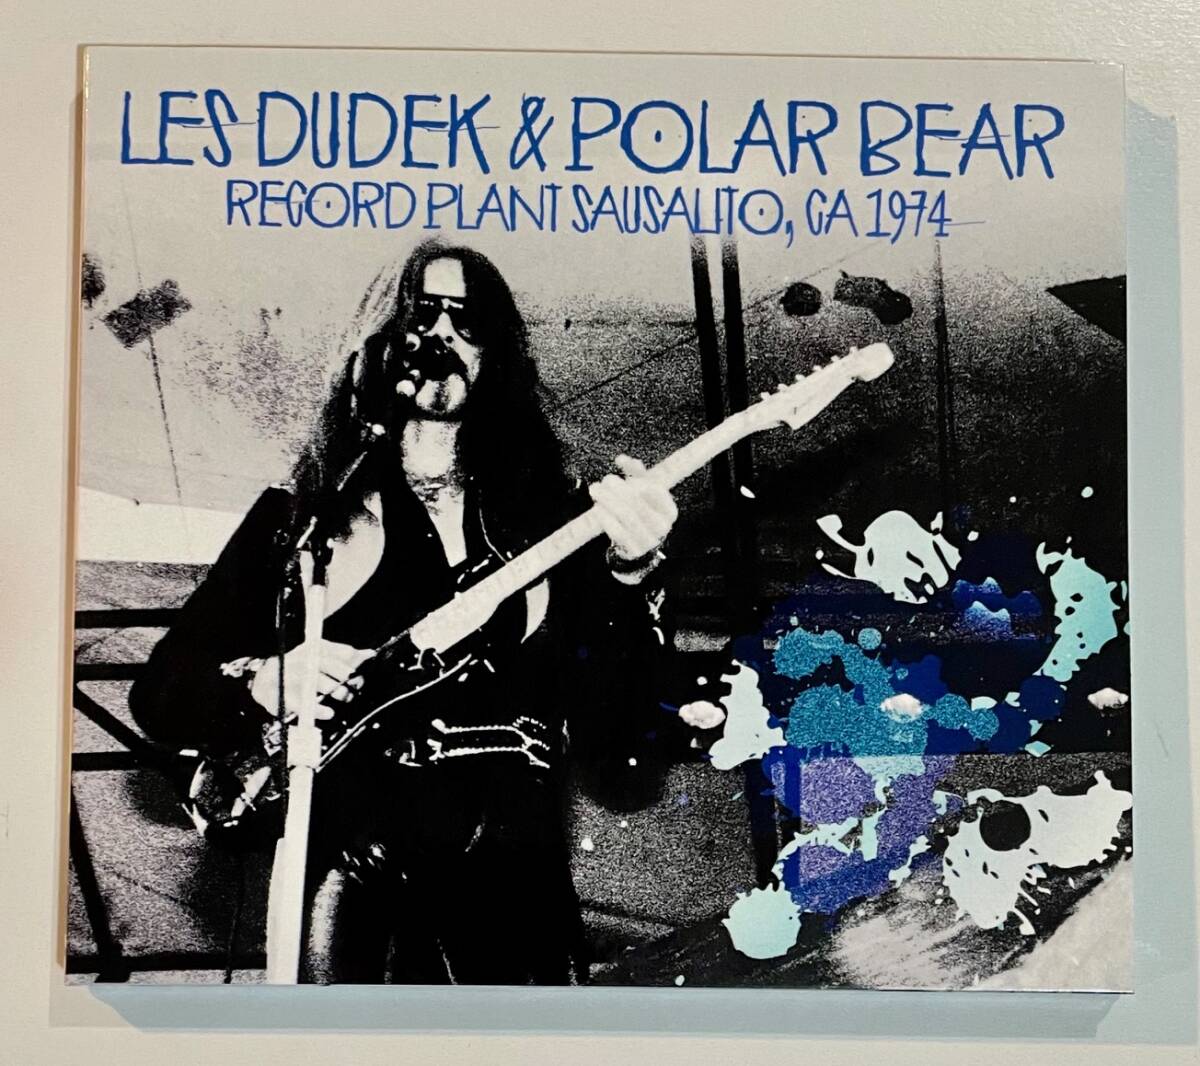 [プレスCD Digipack] Les Dudek & Polar Bear Record Plant, Sausalito, Ca 1974 レス・デューデック Allman Brothers Band オールマンの画像1